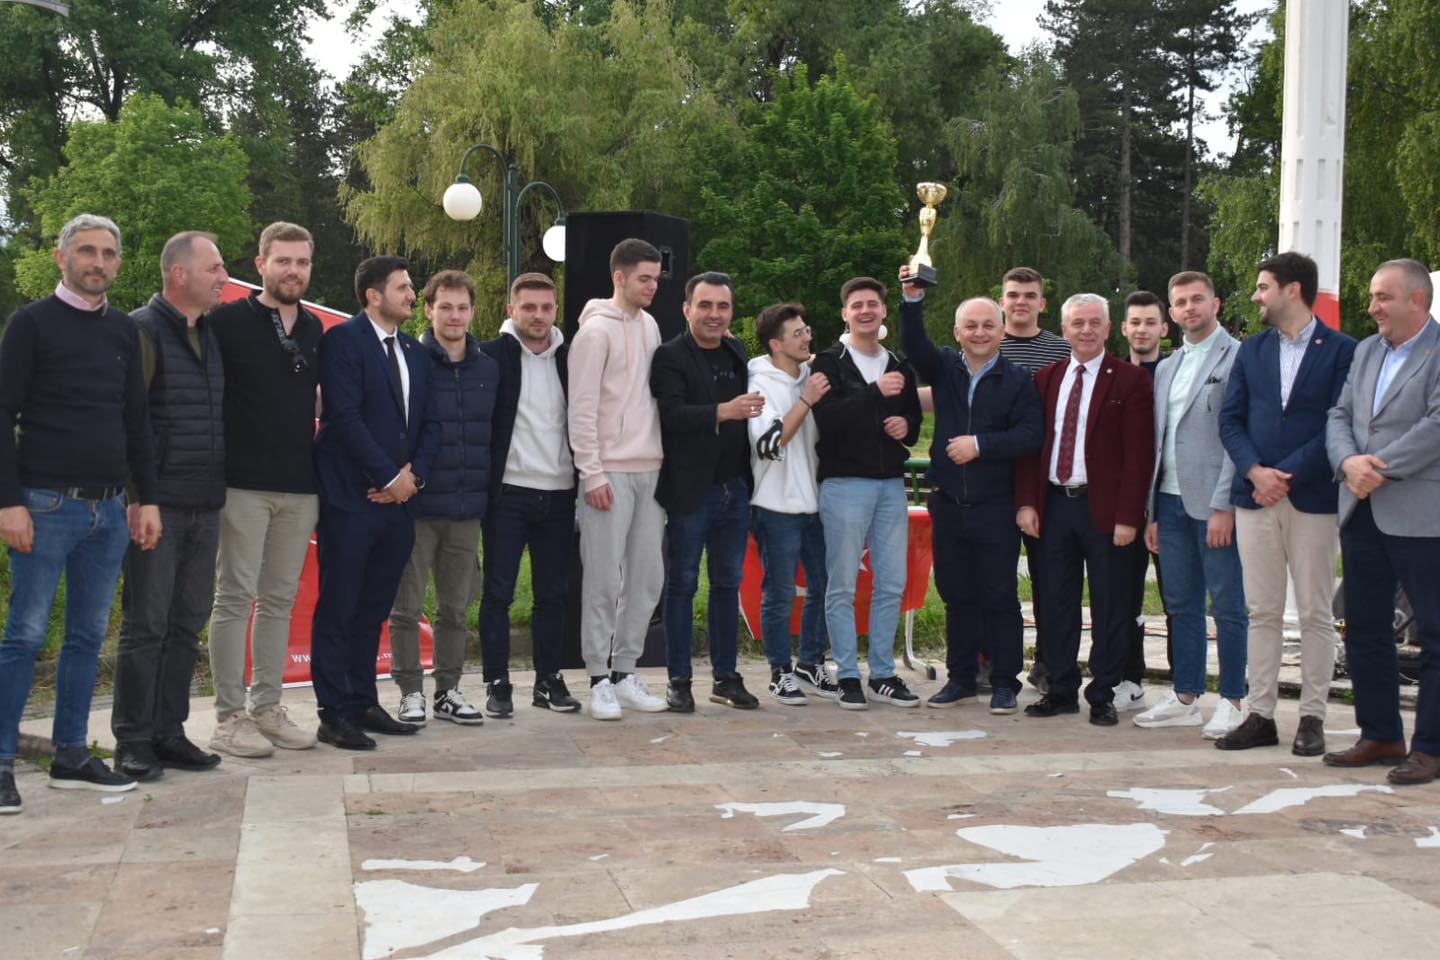 TDP Gençlik Kolları 19 Mayıs vesilesiyle futbol turnuvası düzenledi